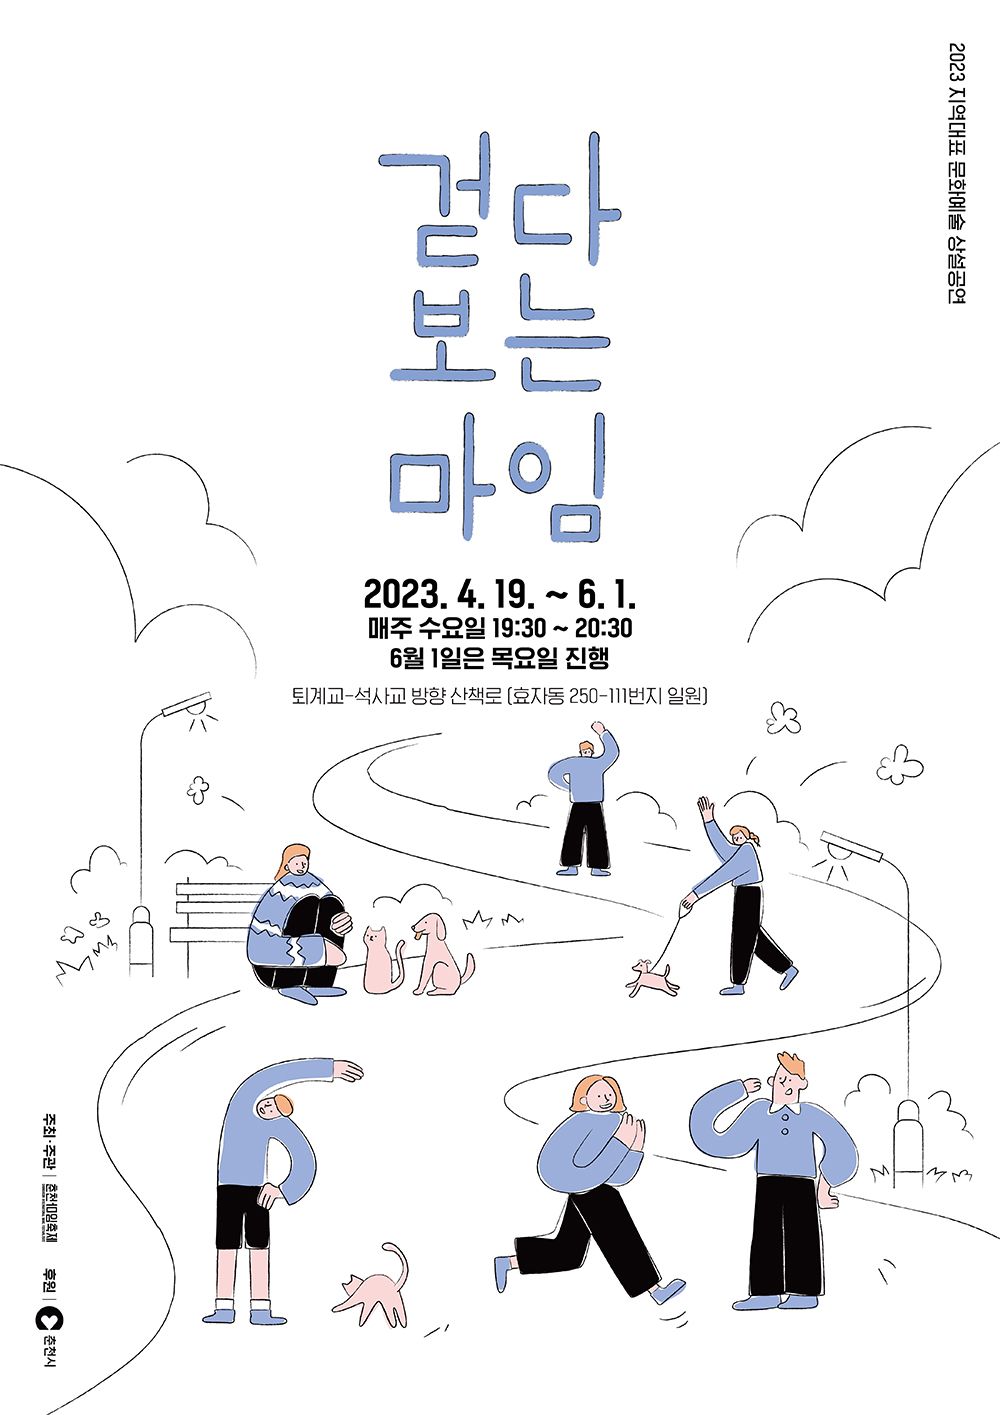 2023 상설공연 '걷다 보는 마임' Image